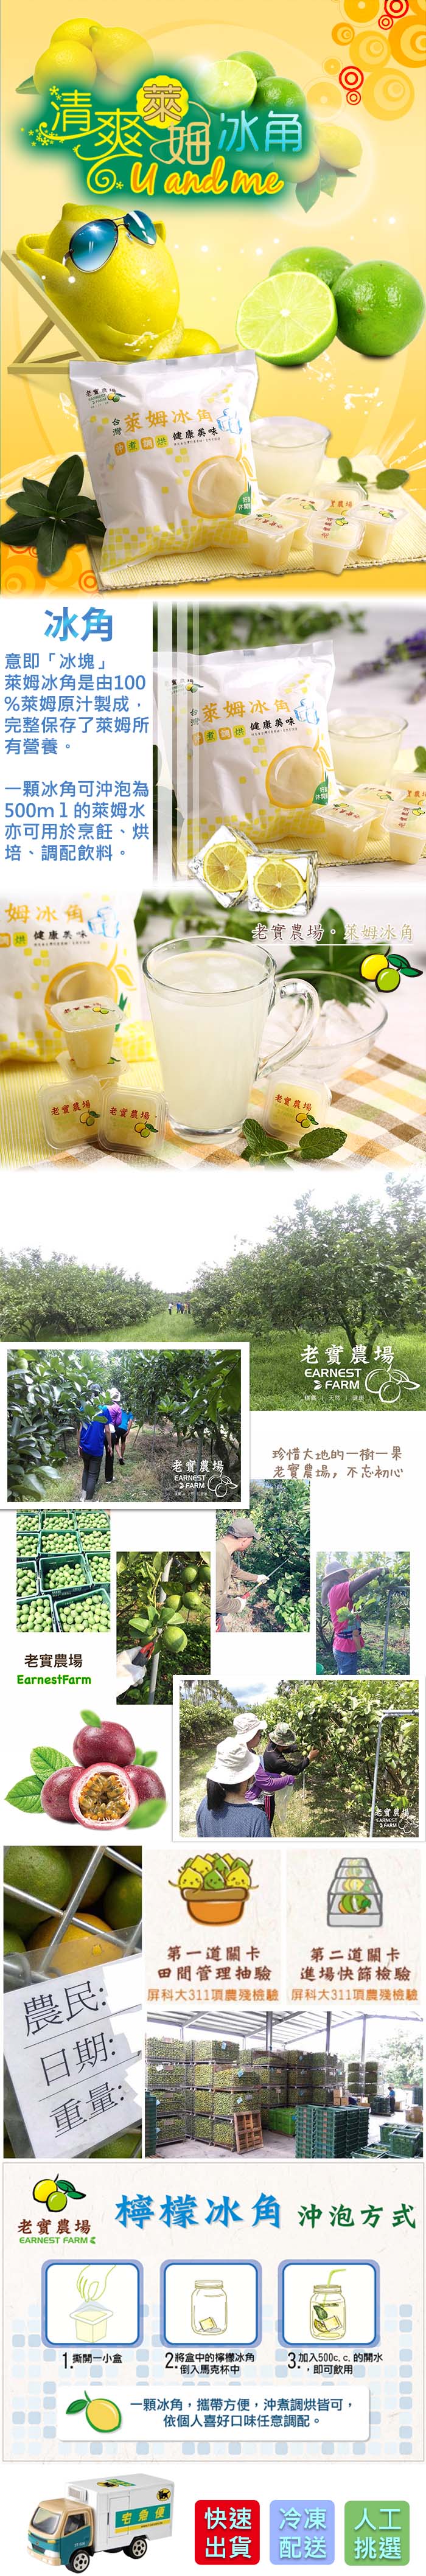 【老實農場】檸檬冰角/萊姆冰角10袋(28mlX10個/袋)